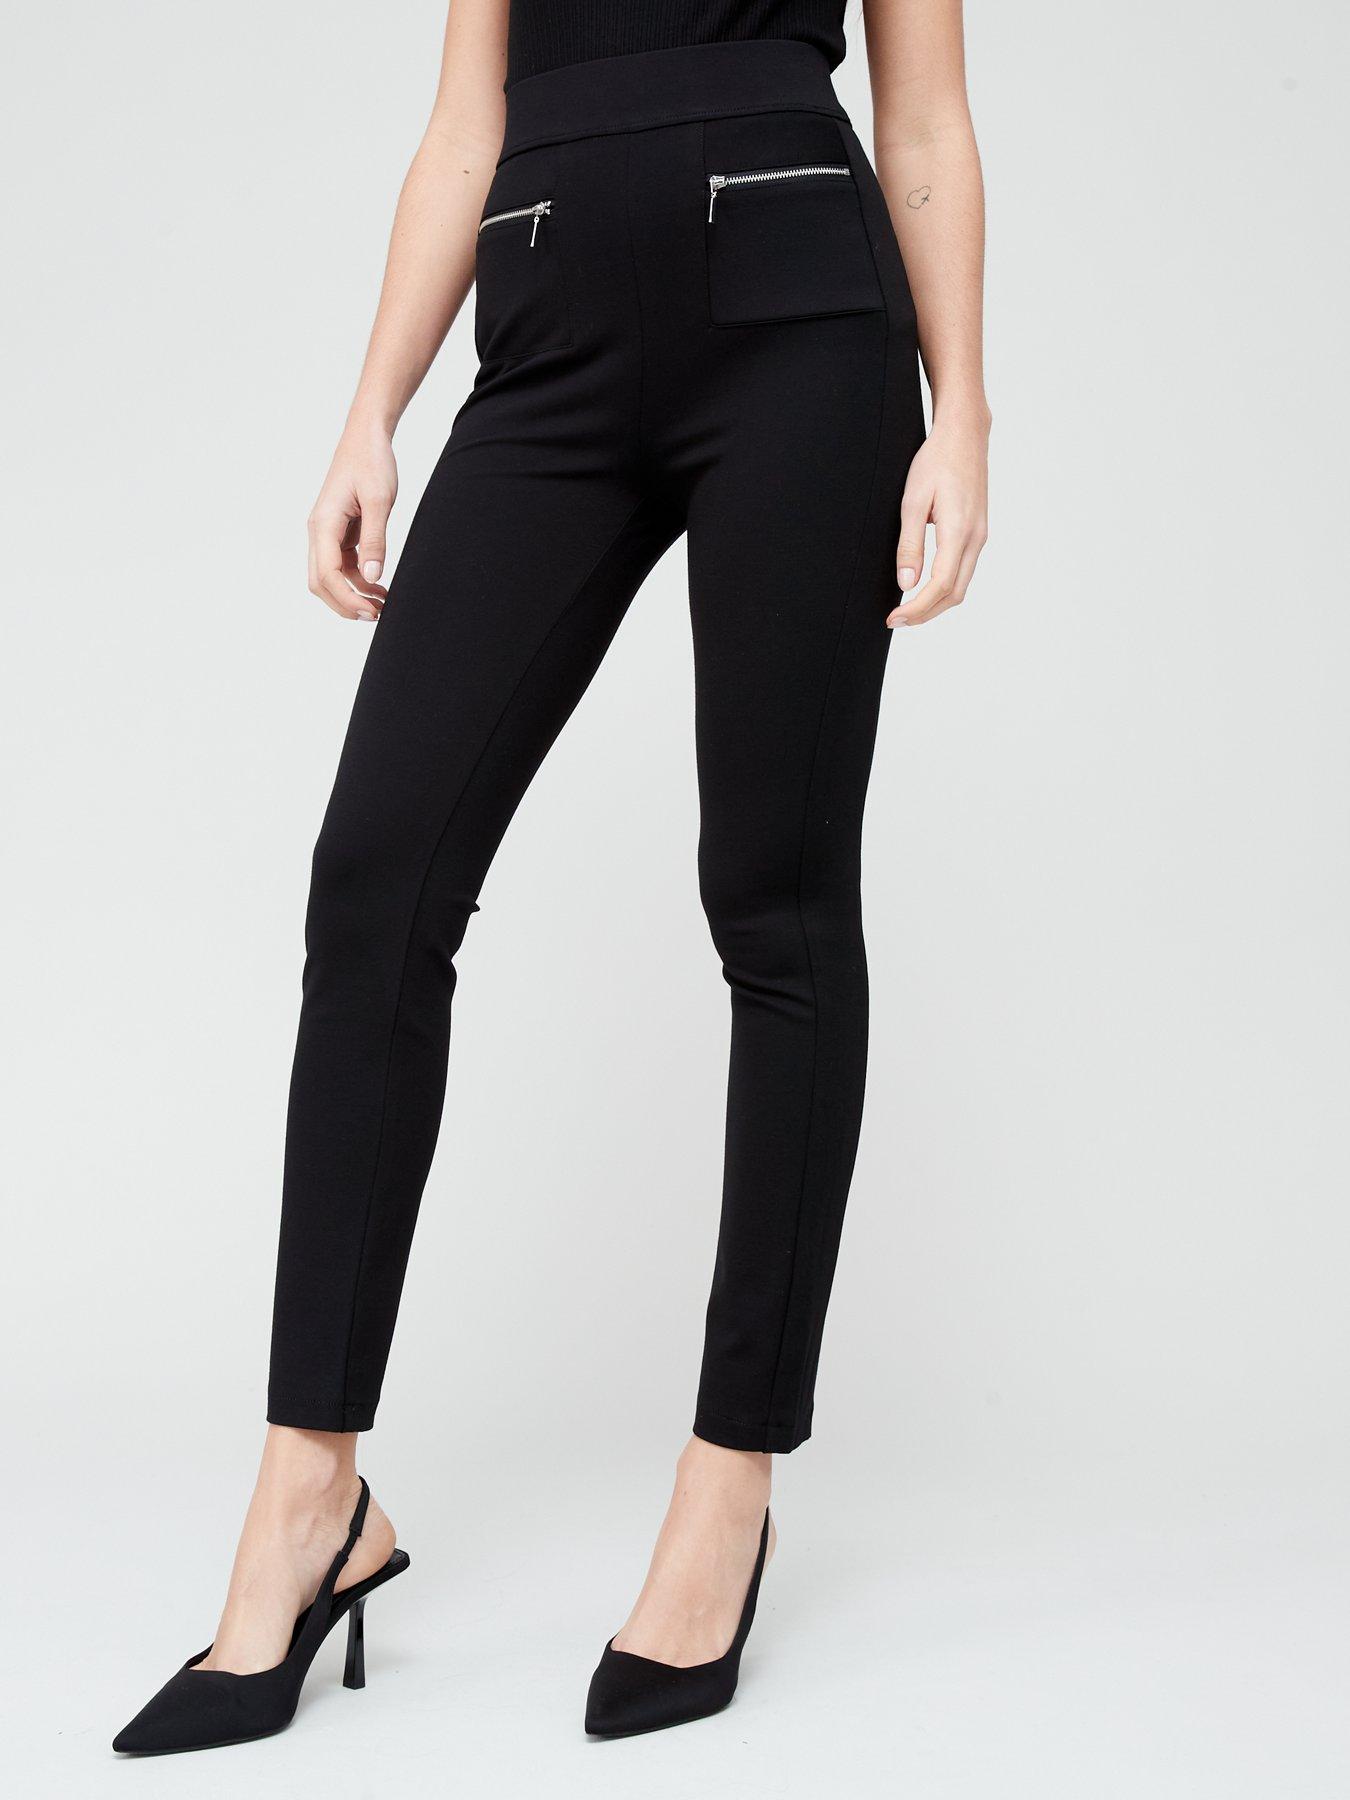 V by Very Premium Ponte Tall Skinny Trousers - Black